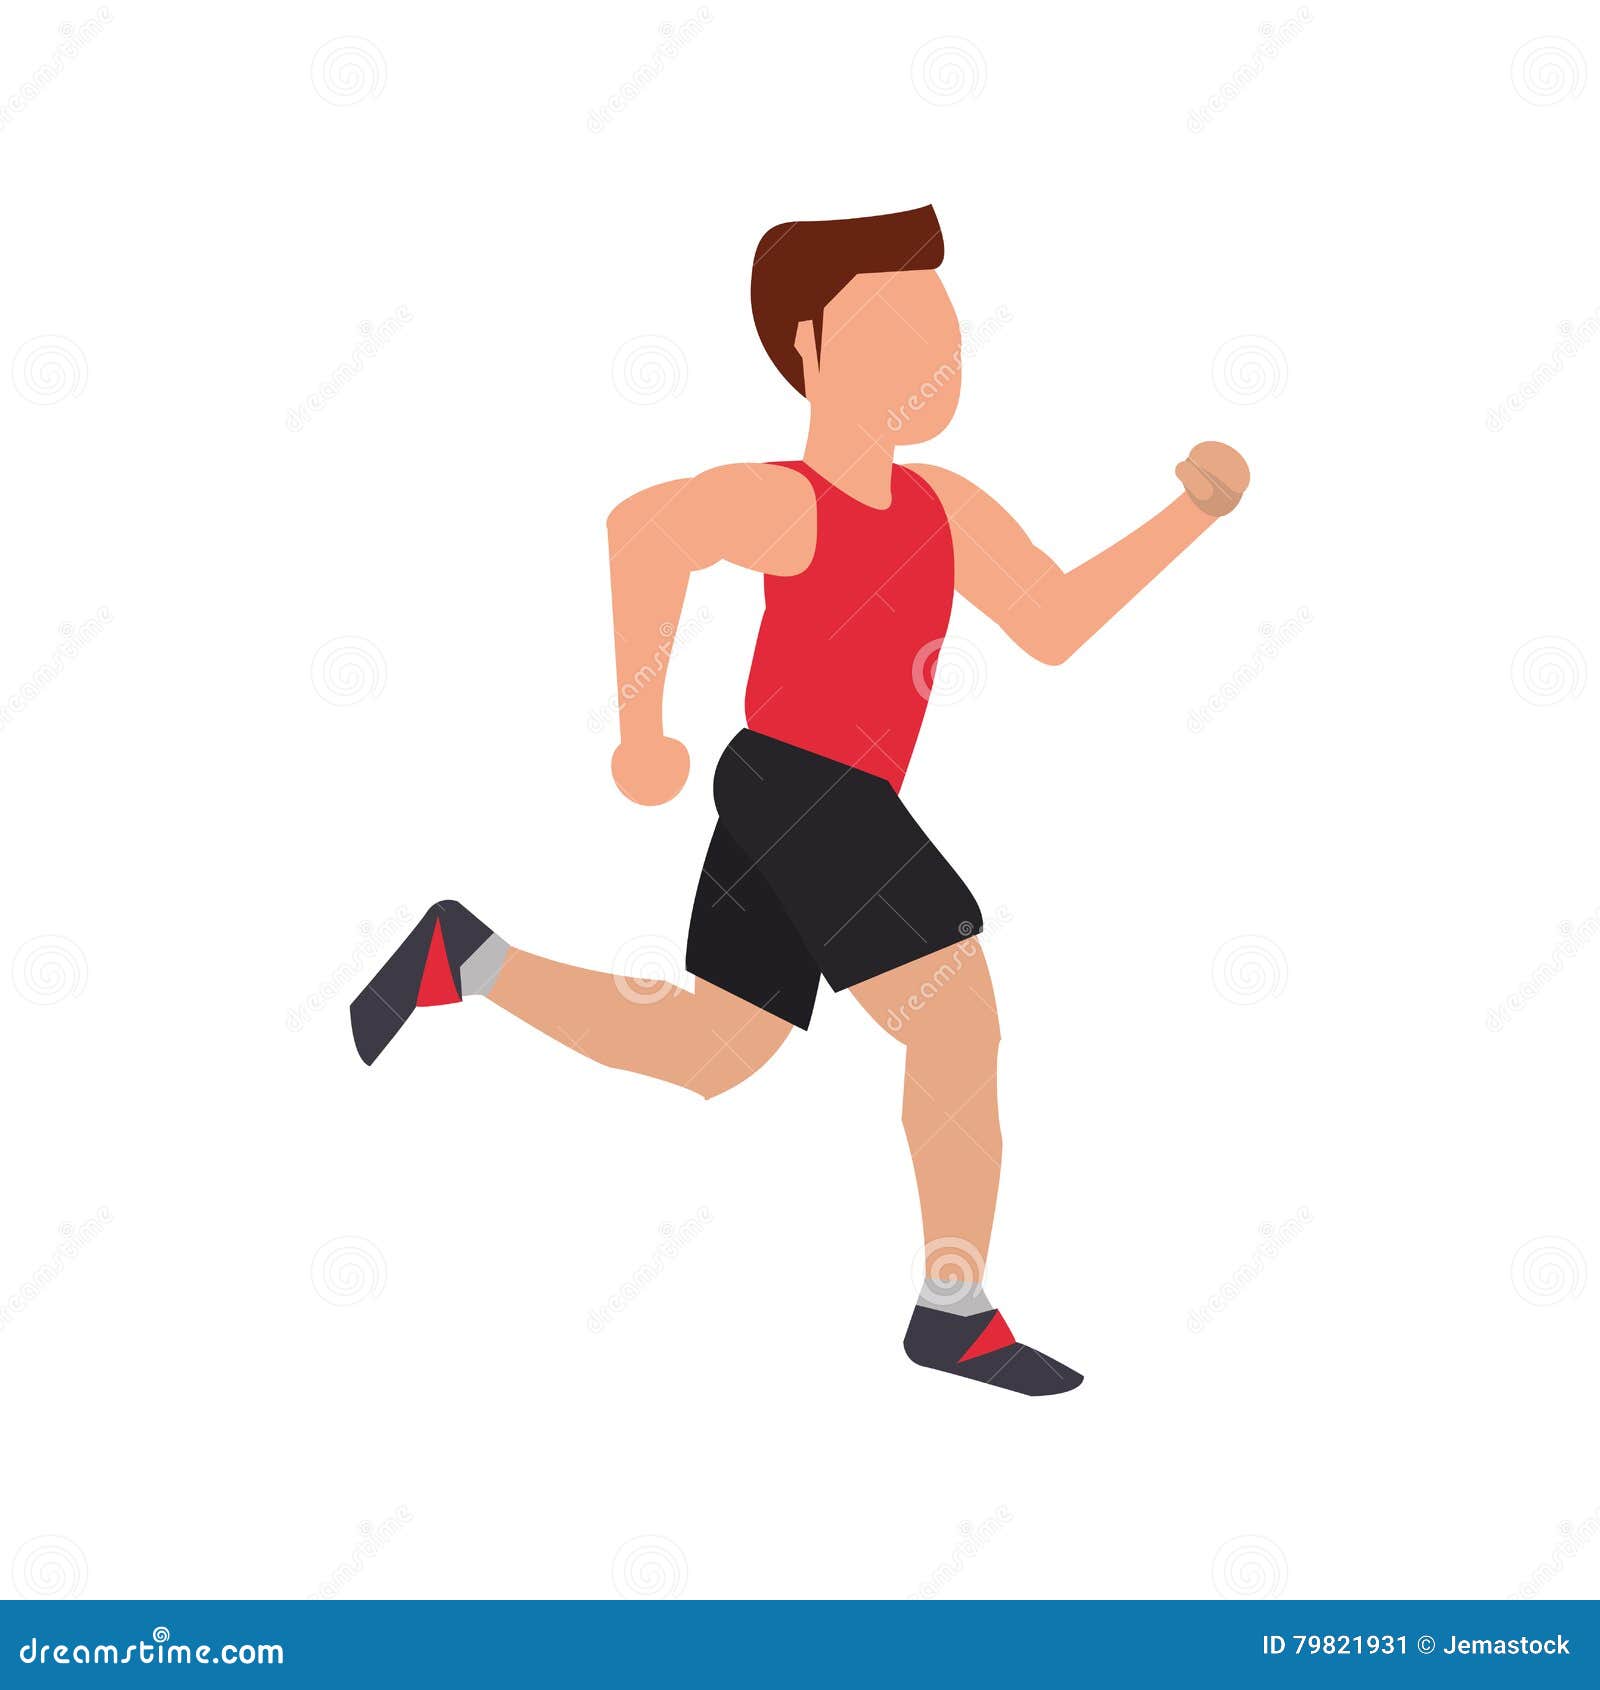 Isolated runner man design stock illustration. Illustration of exercise ...